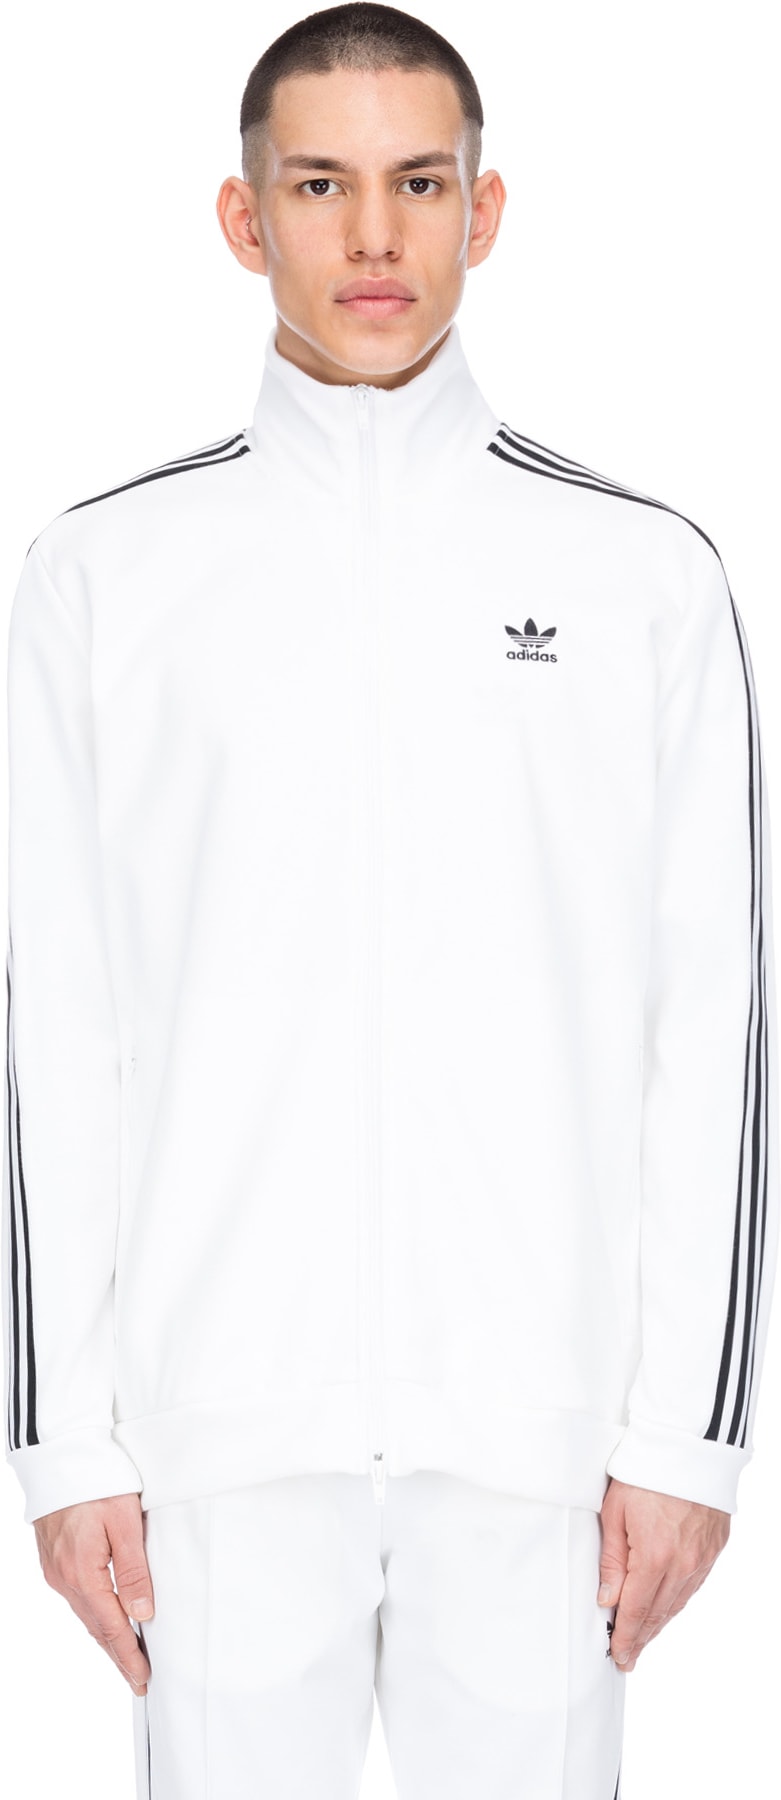 adidas originals beckenbauer track jacket white